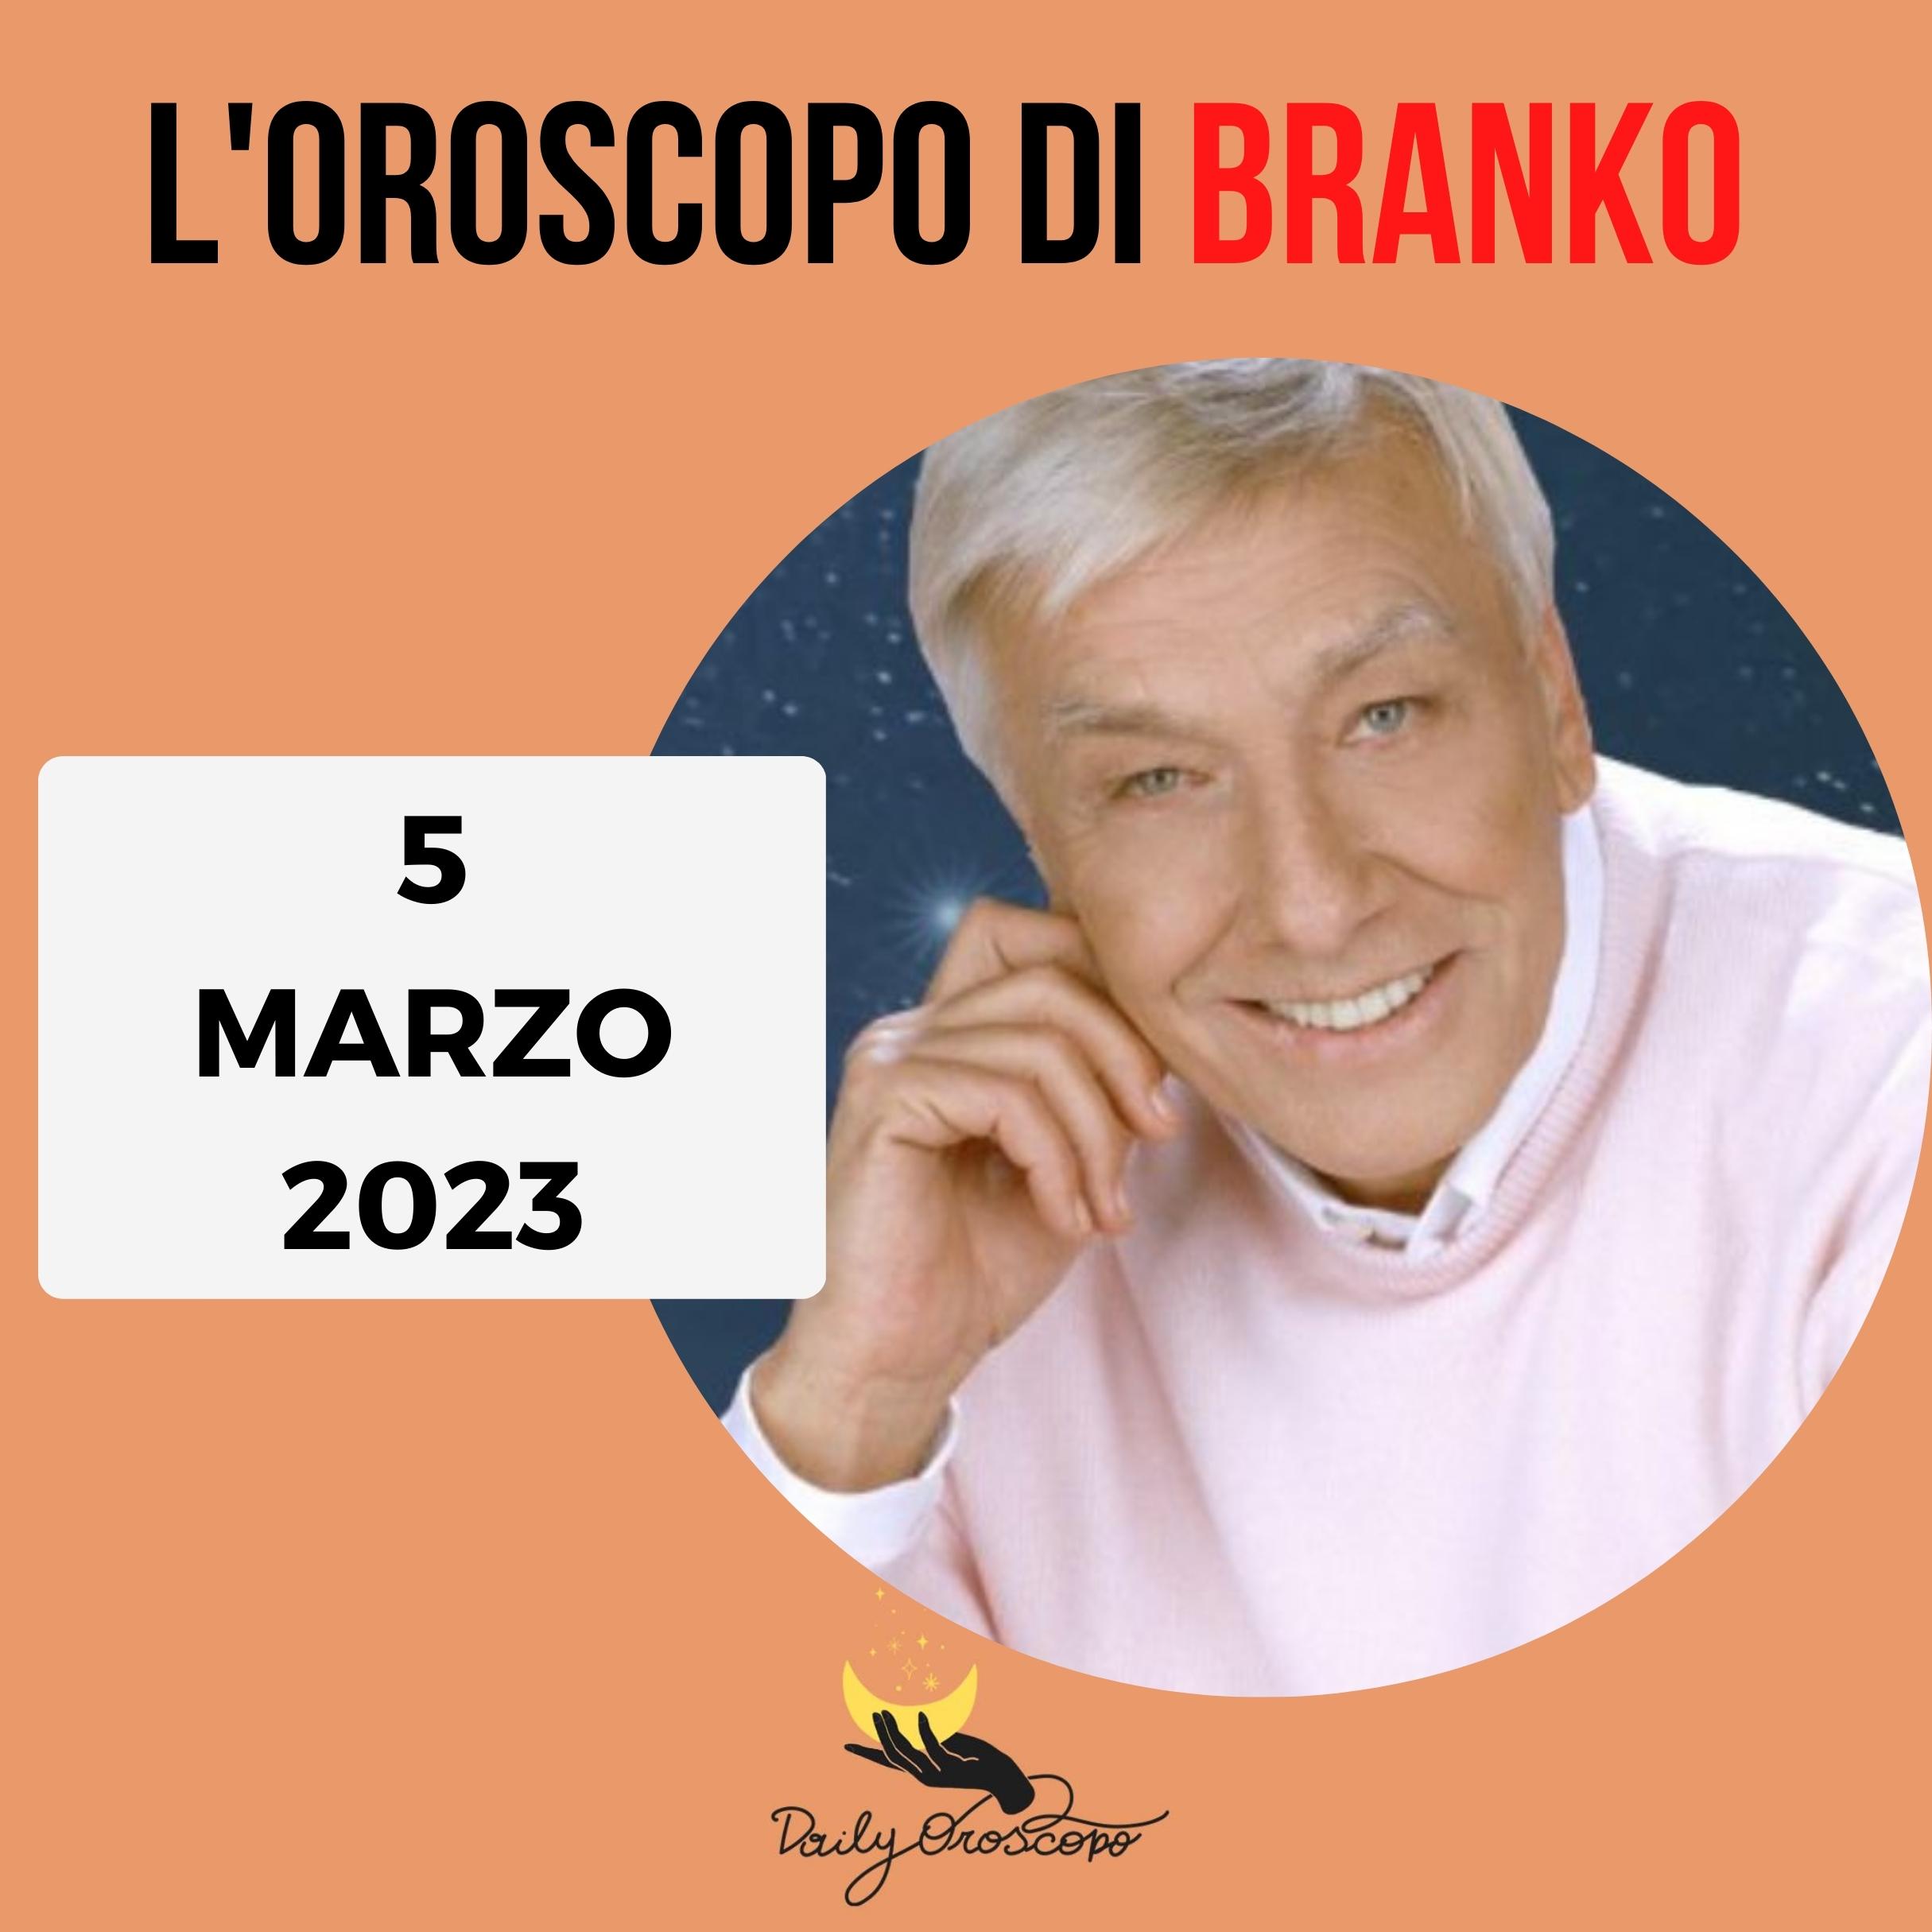 Oroscopo Branko oggi 5 marzo 2023